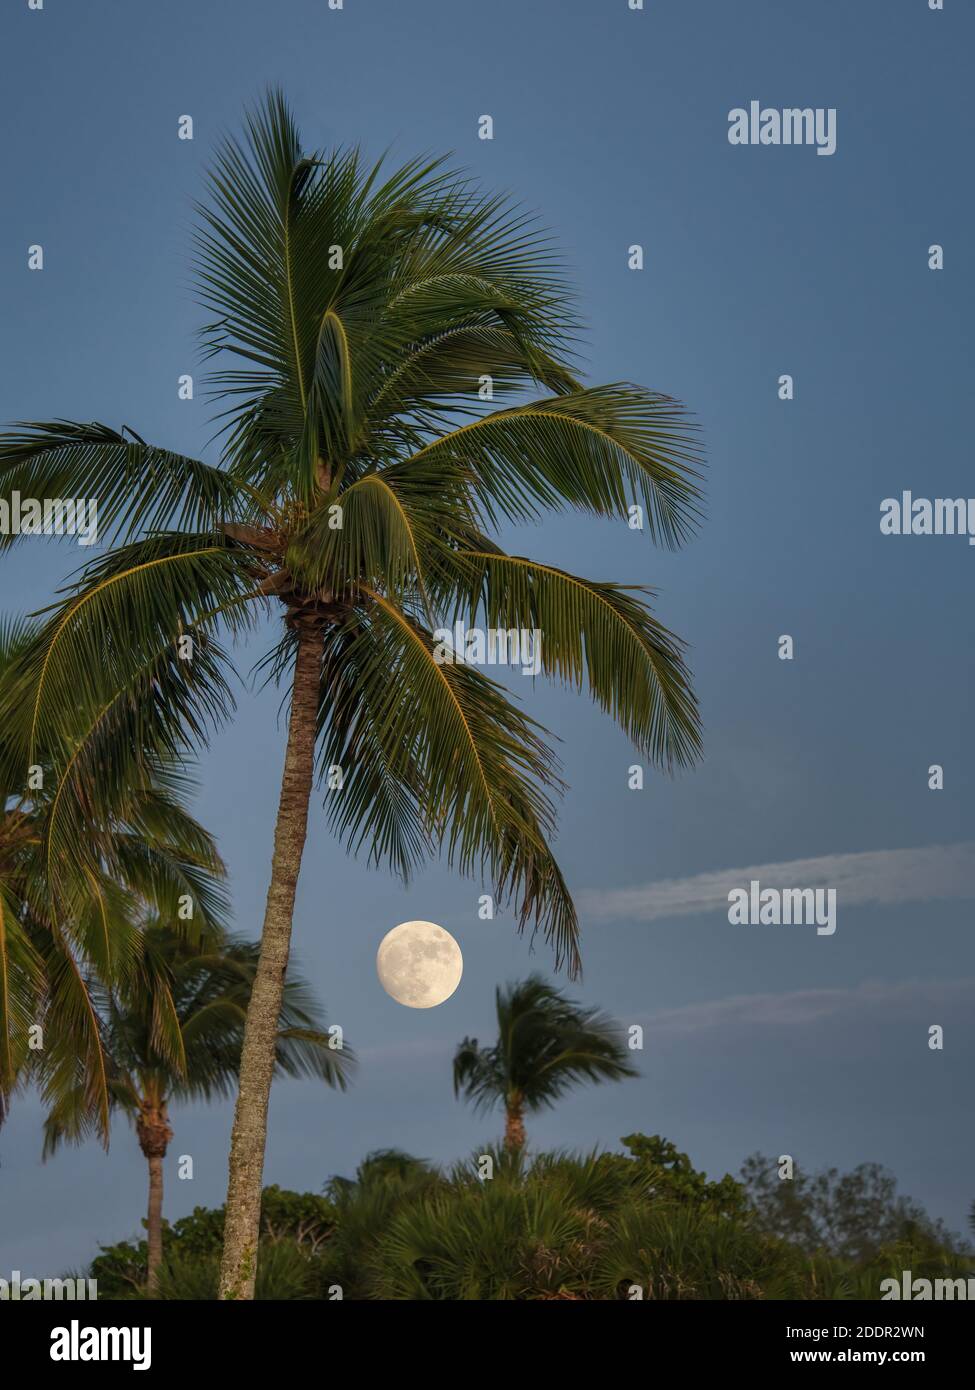 Pleine lune derrière les palmiers sur l'île de Sanibel au sud-ouest Floride aux États-Unis Banque D'Images